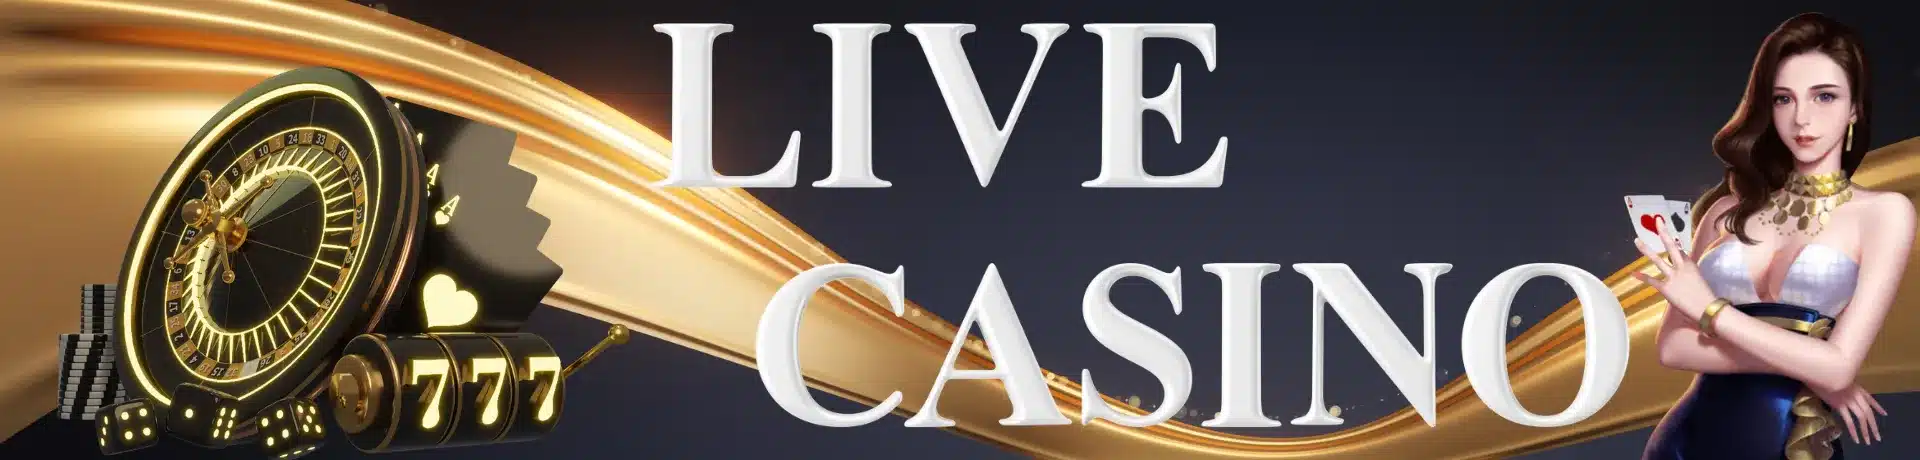 live-casino-image